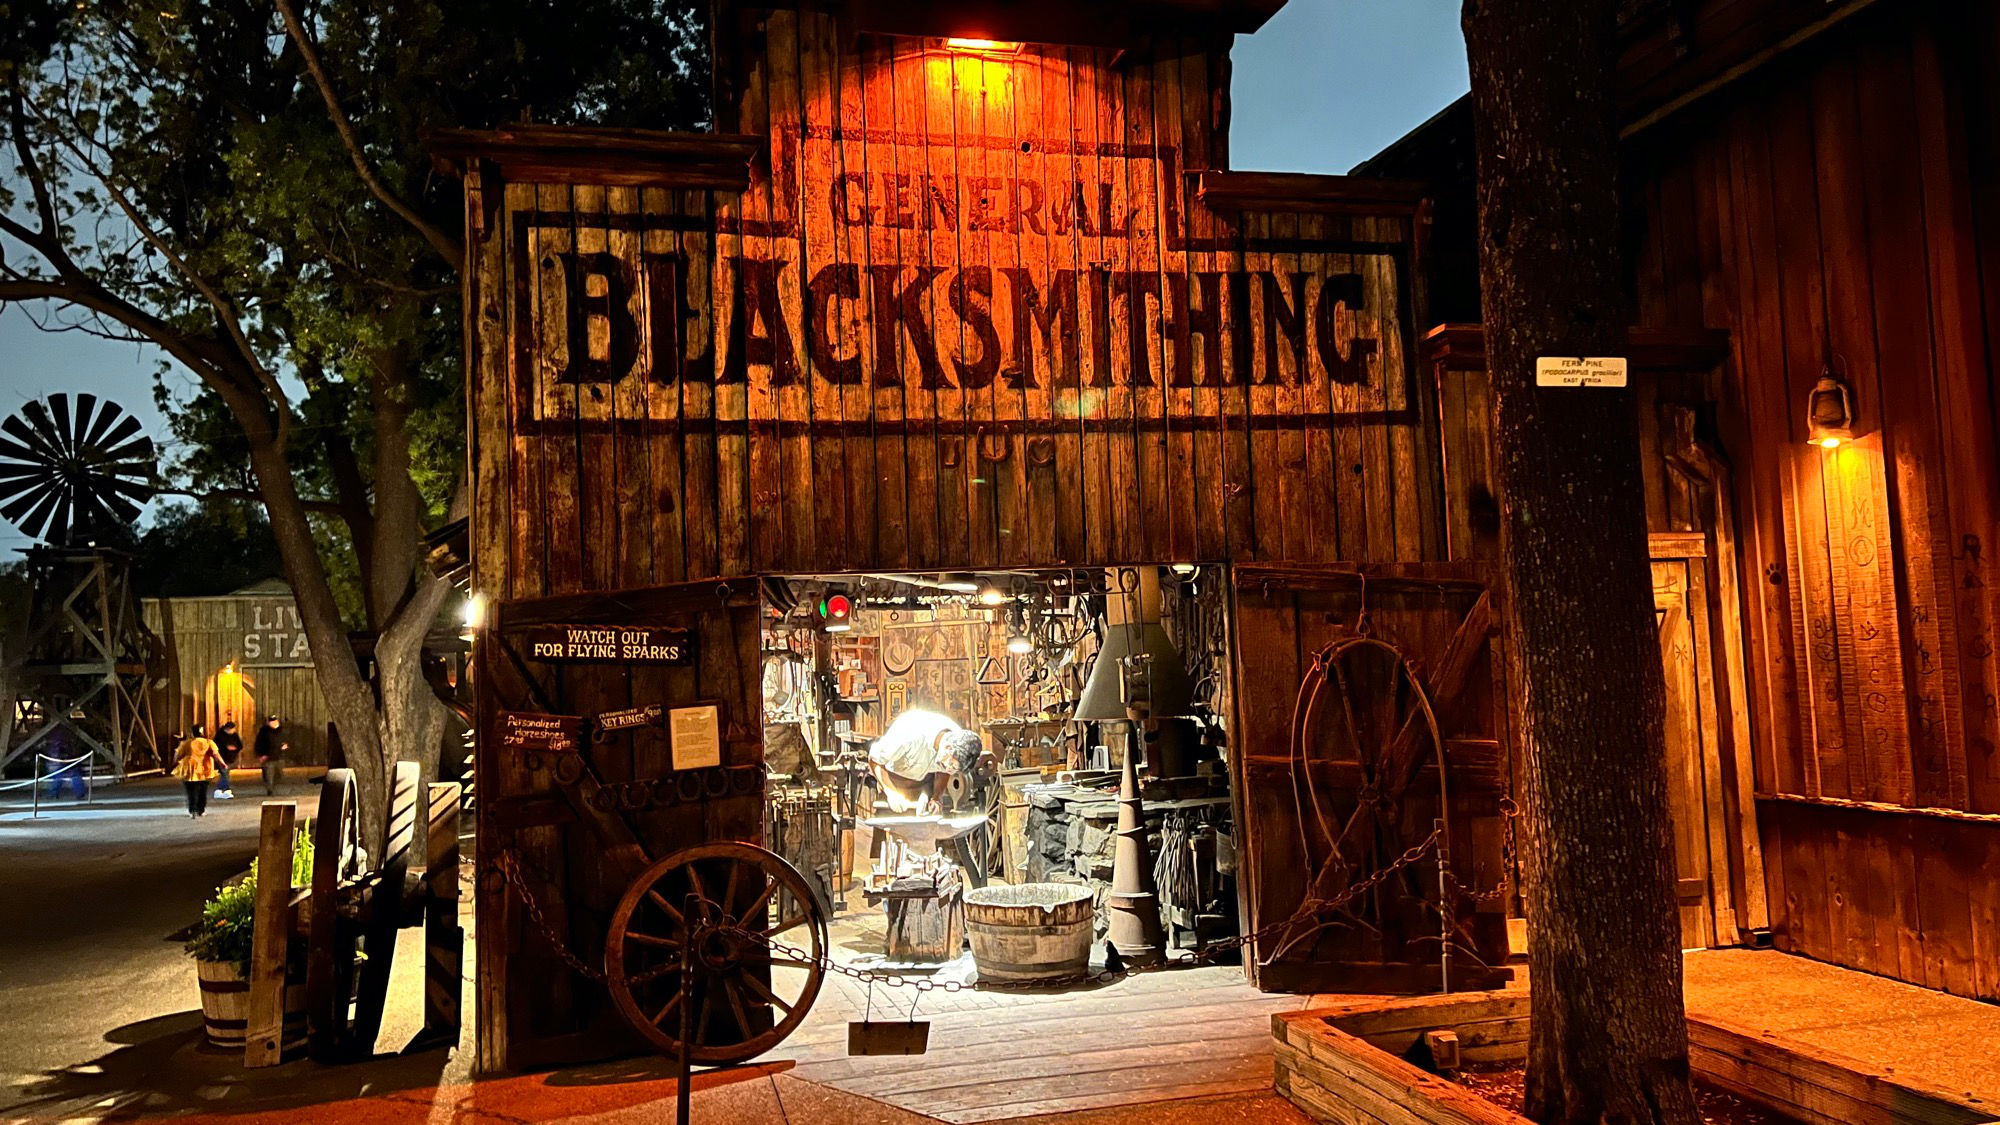 Blacksmith at Night